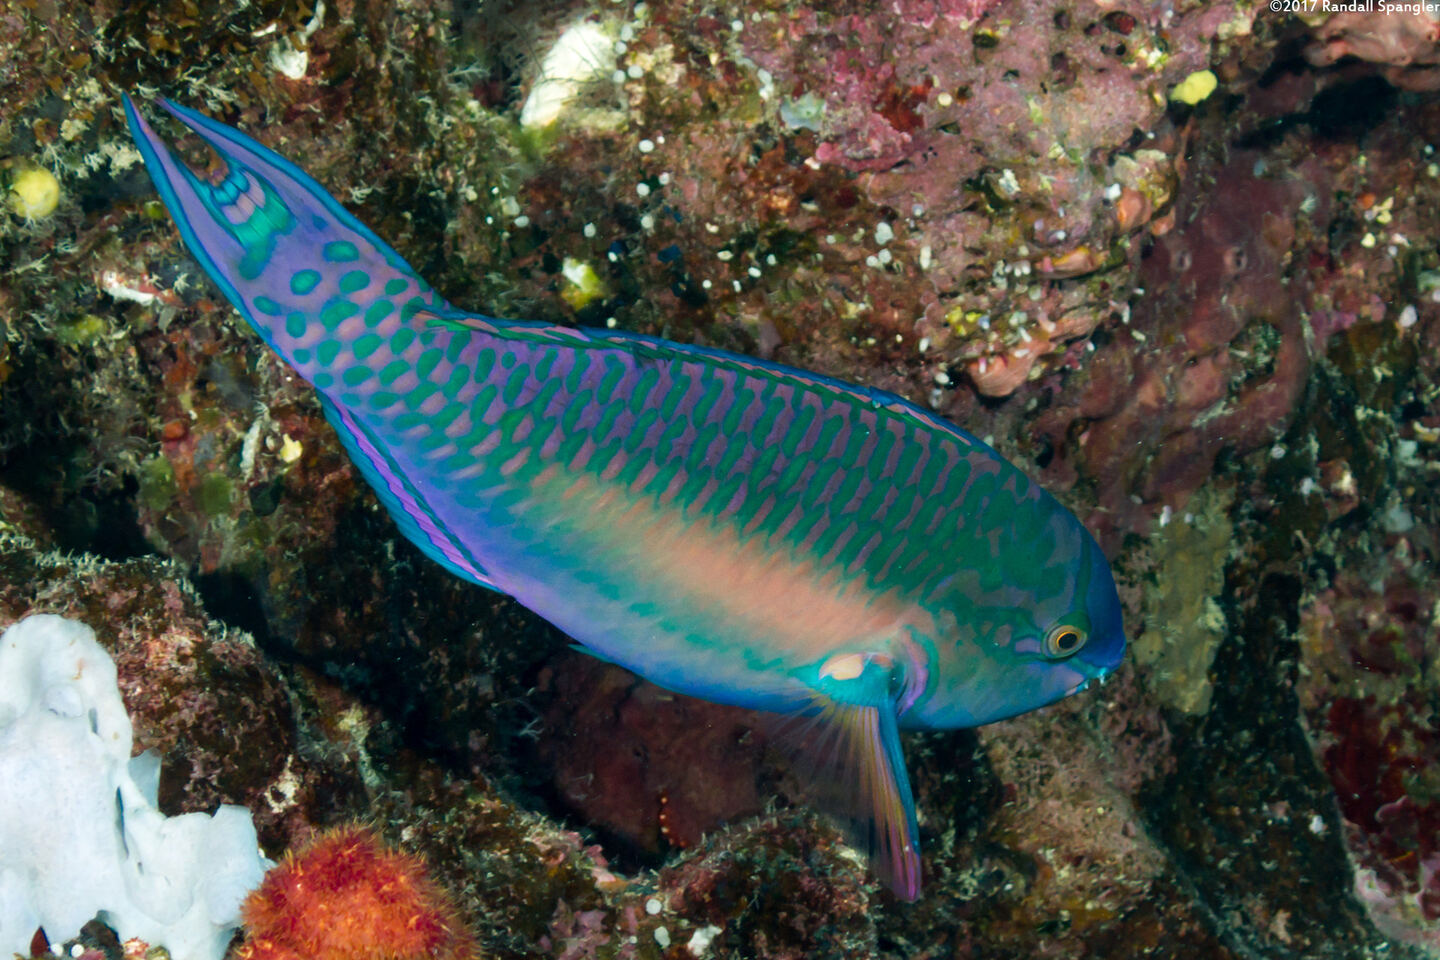 Scarus chameleon (Chameleon Parrotfish)